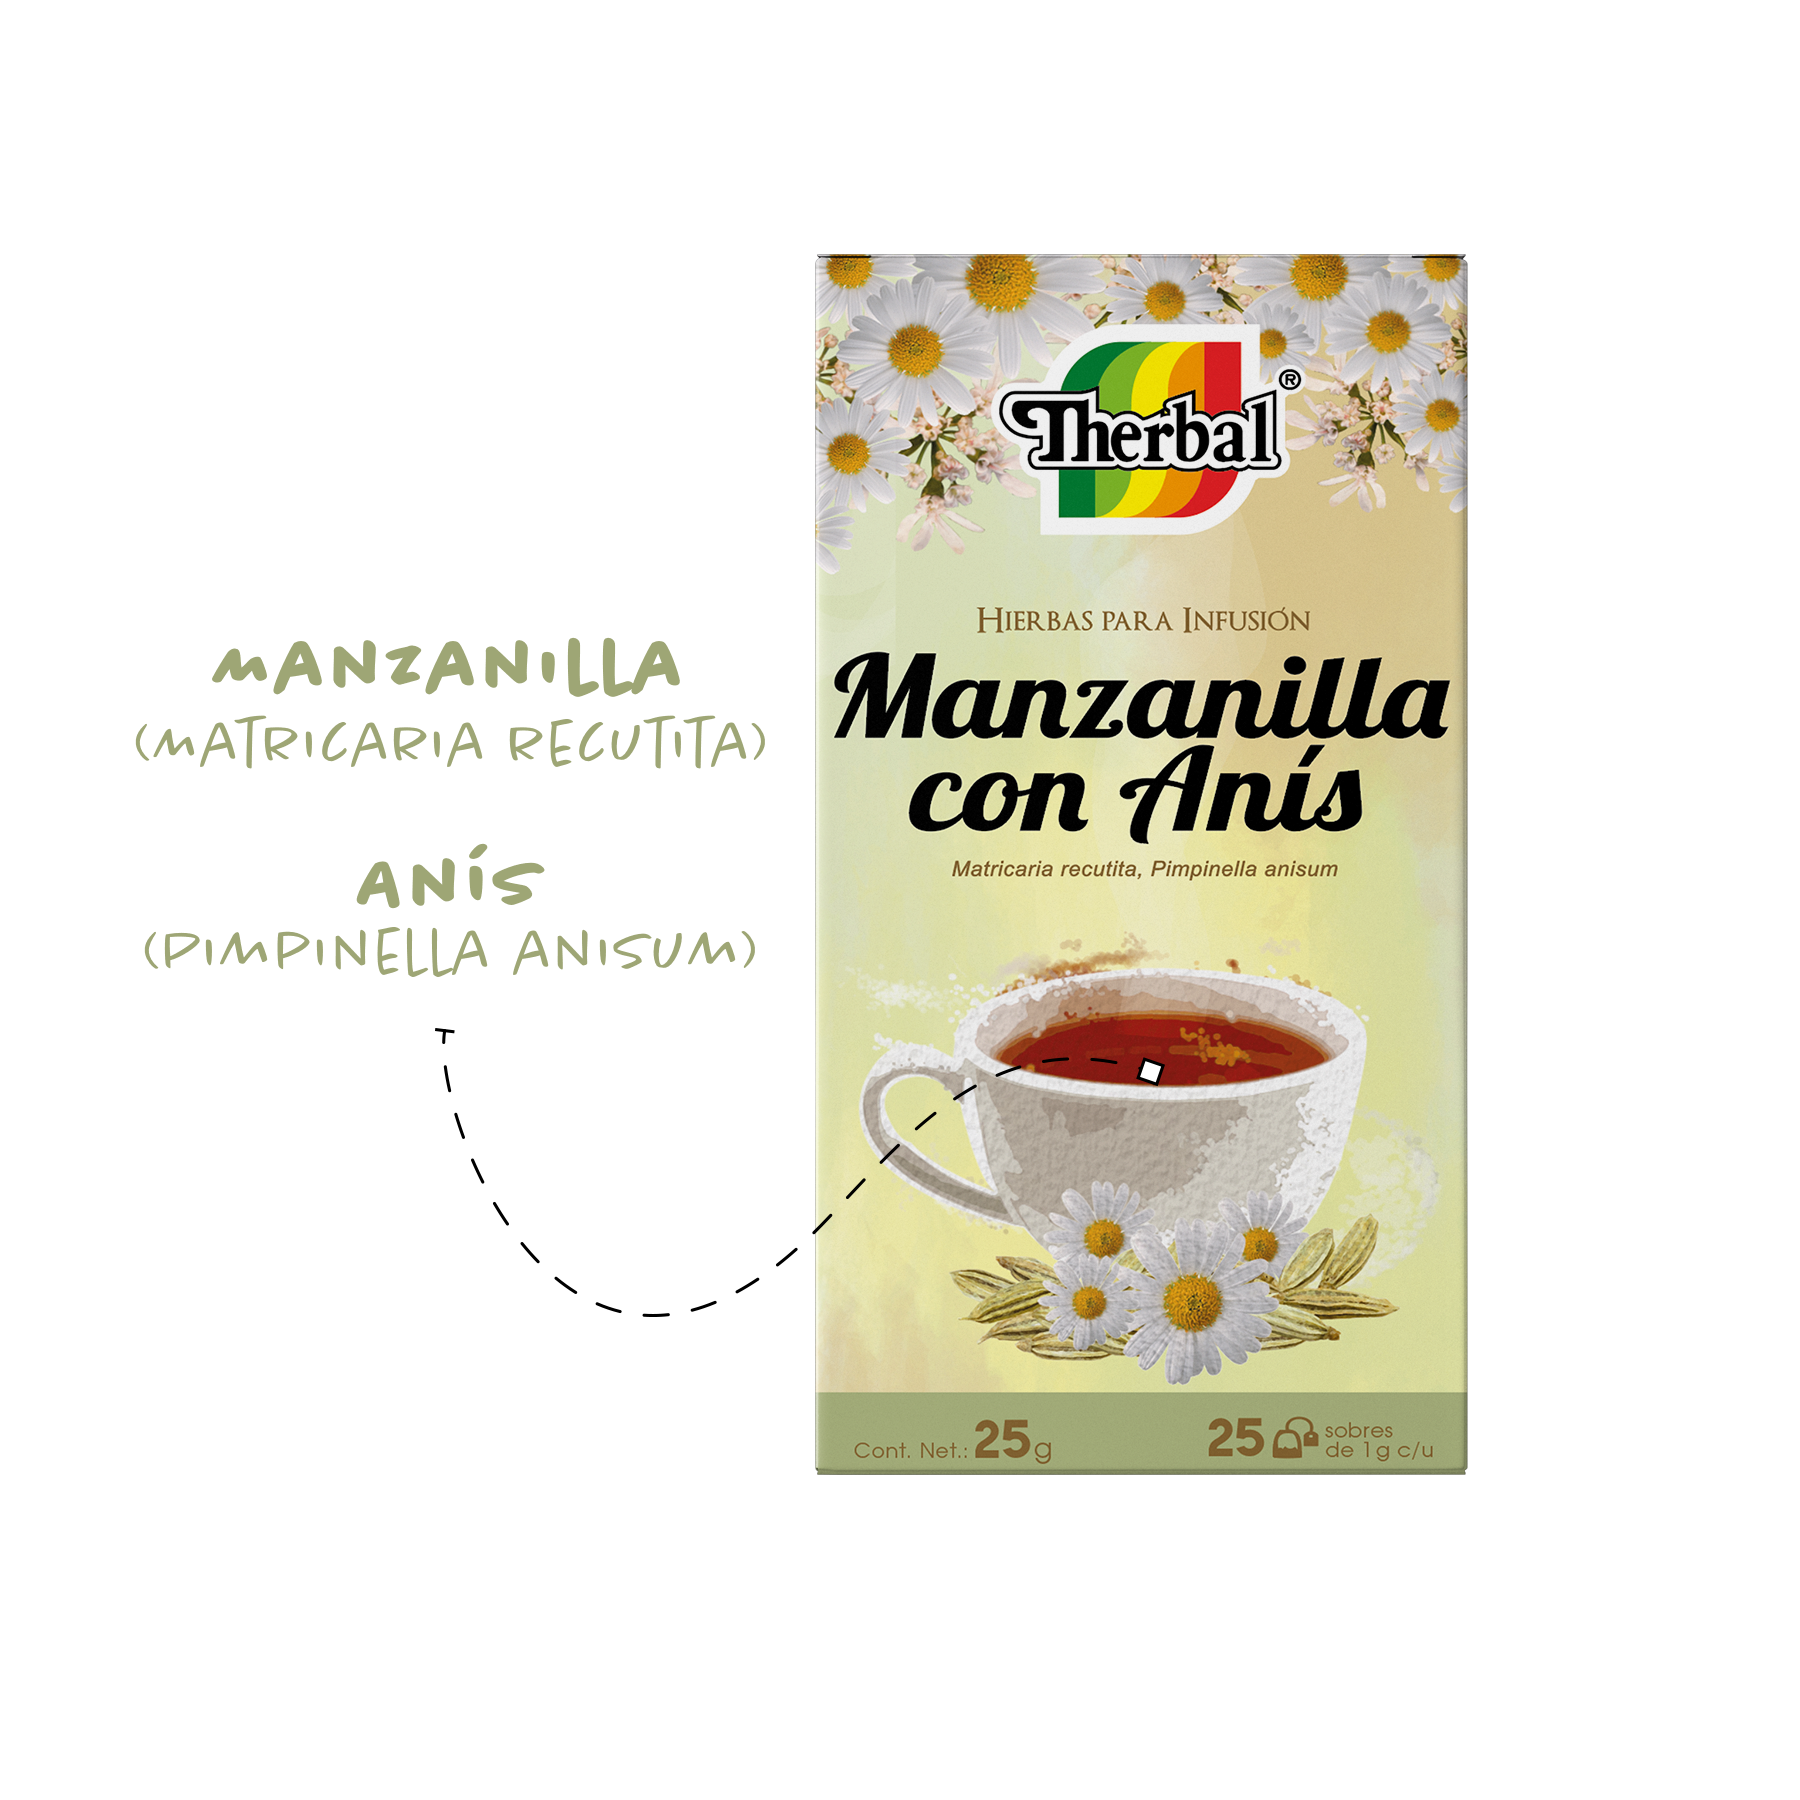 Manzanilla con Anís